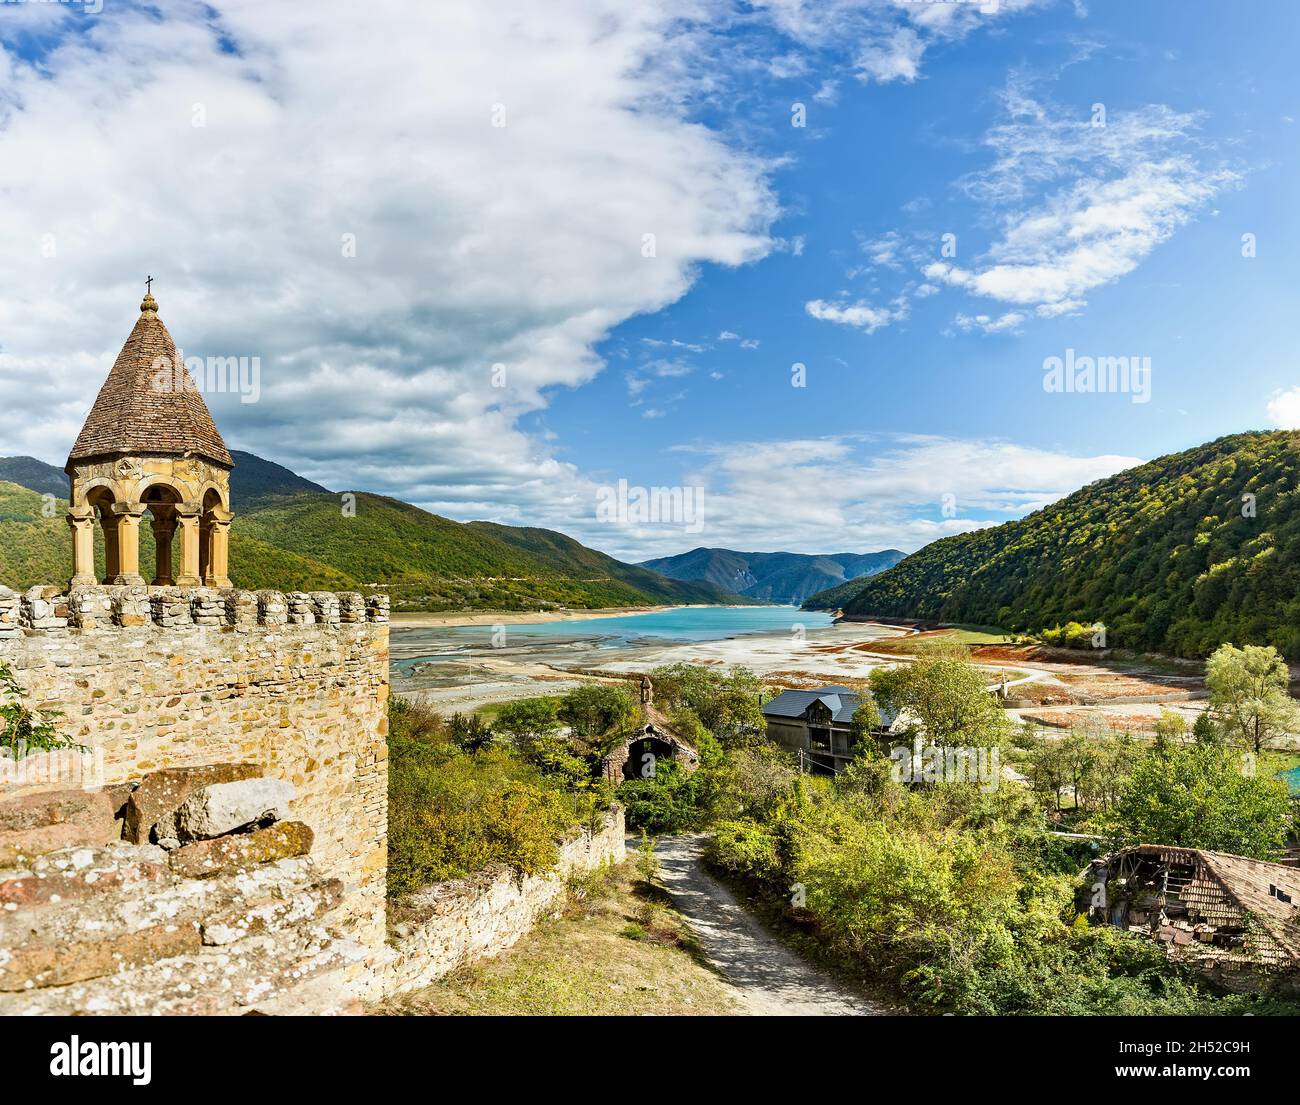 Ananuri est un complexe de châteaux situé sur la rivière Aragvi en Géorgie, à environ 72 kilomètres de Tbilissi. Banque D'Images